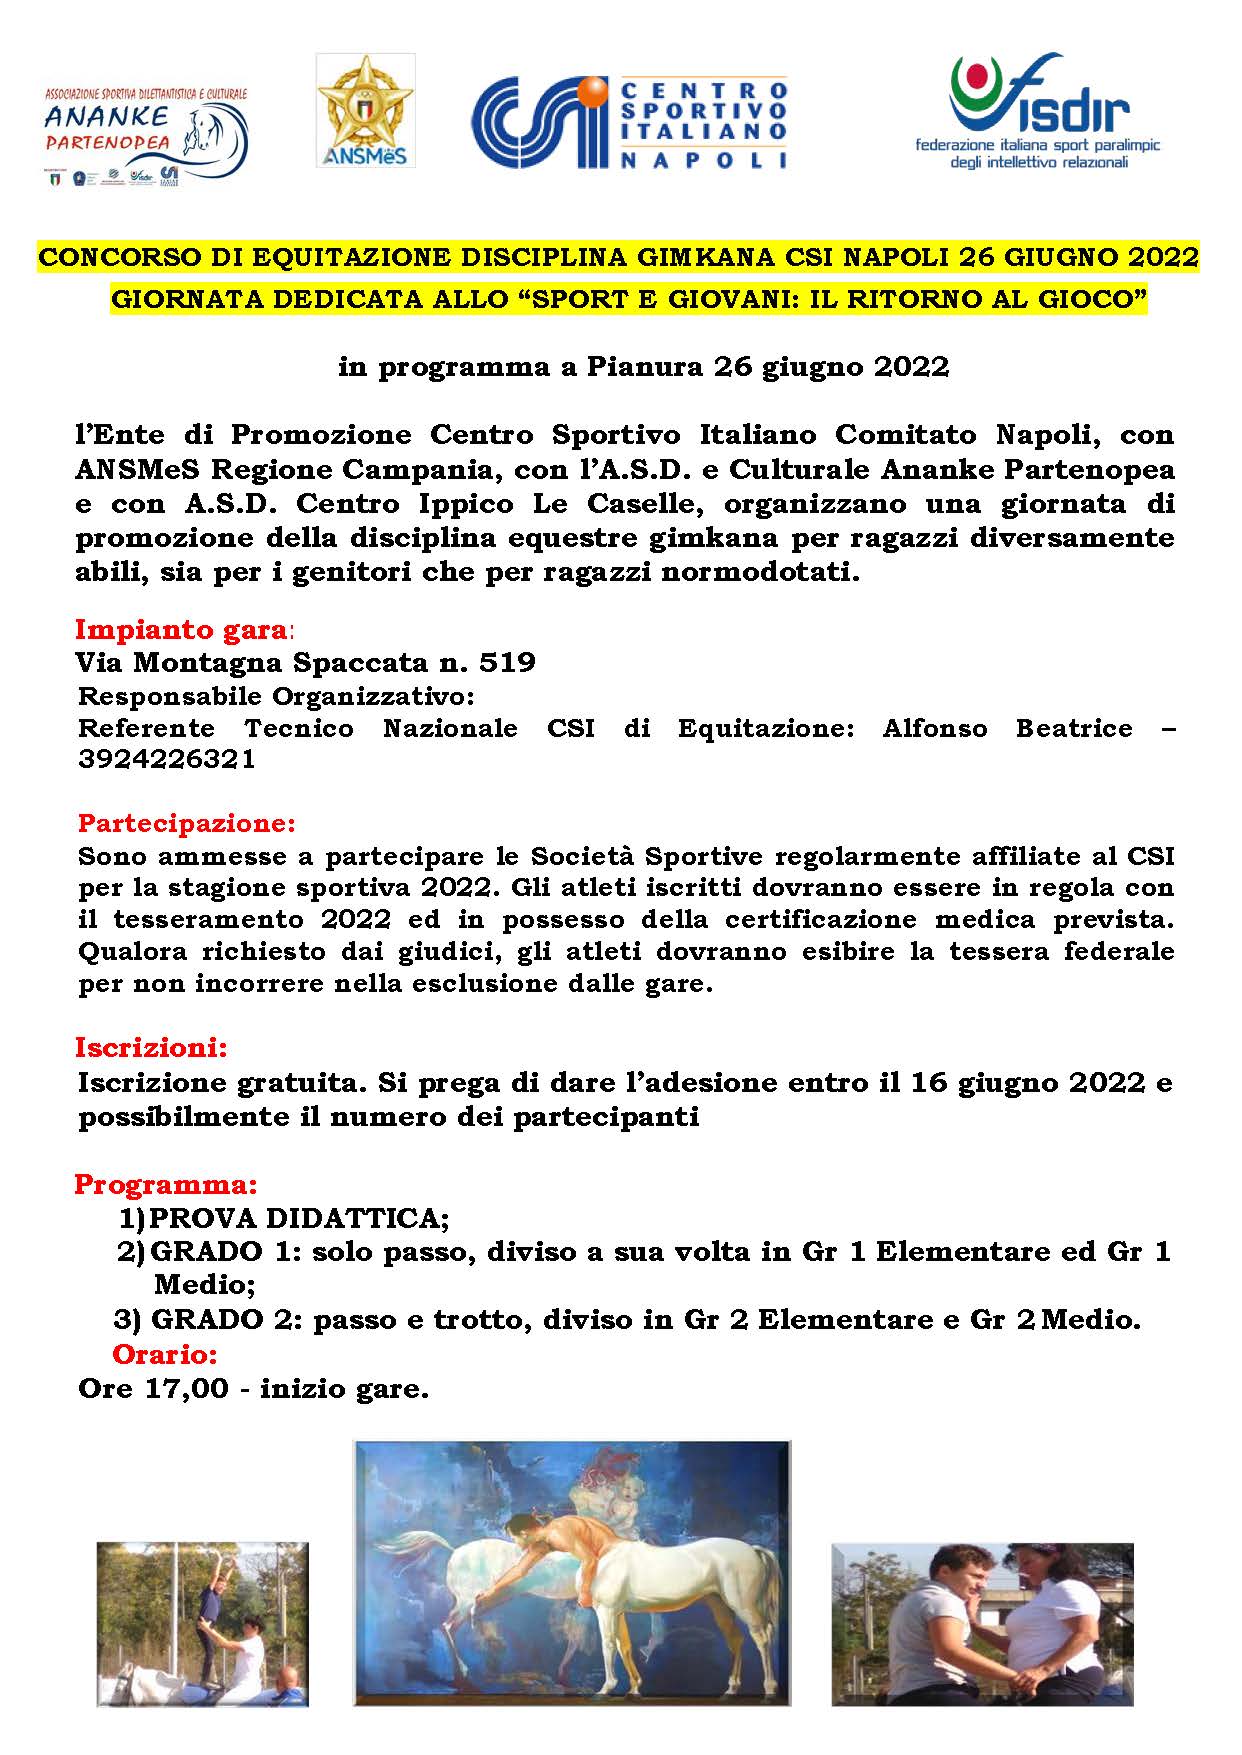 images/news/regionali/campania/Concorso_di_Equitazione_disciplina_gimkana_CSI_Napoli_26_giugno_2022.jpg